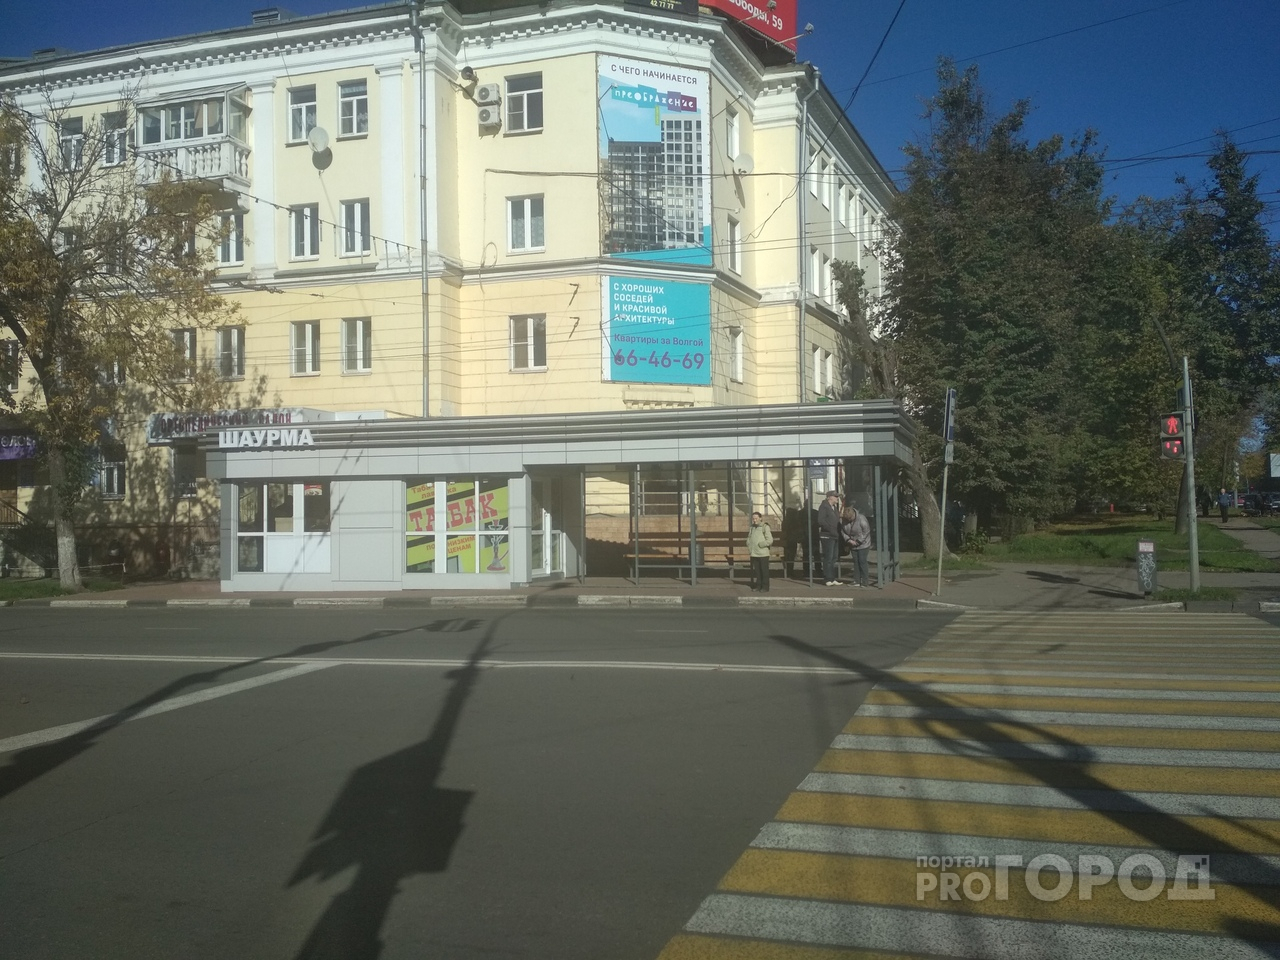 Кричат матом и едут мимо: водители не признают новую остановку в Ярославле